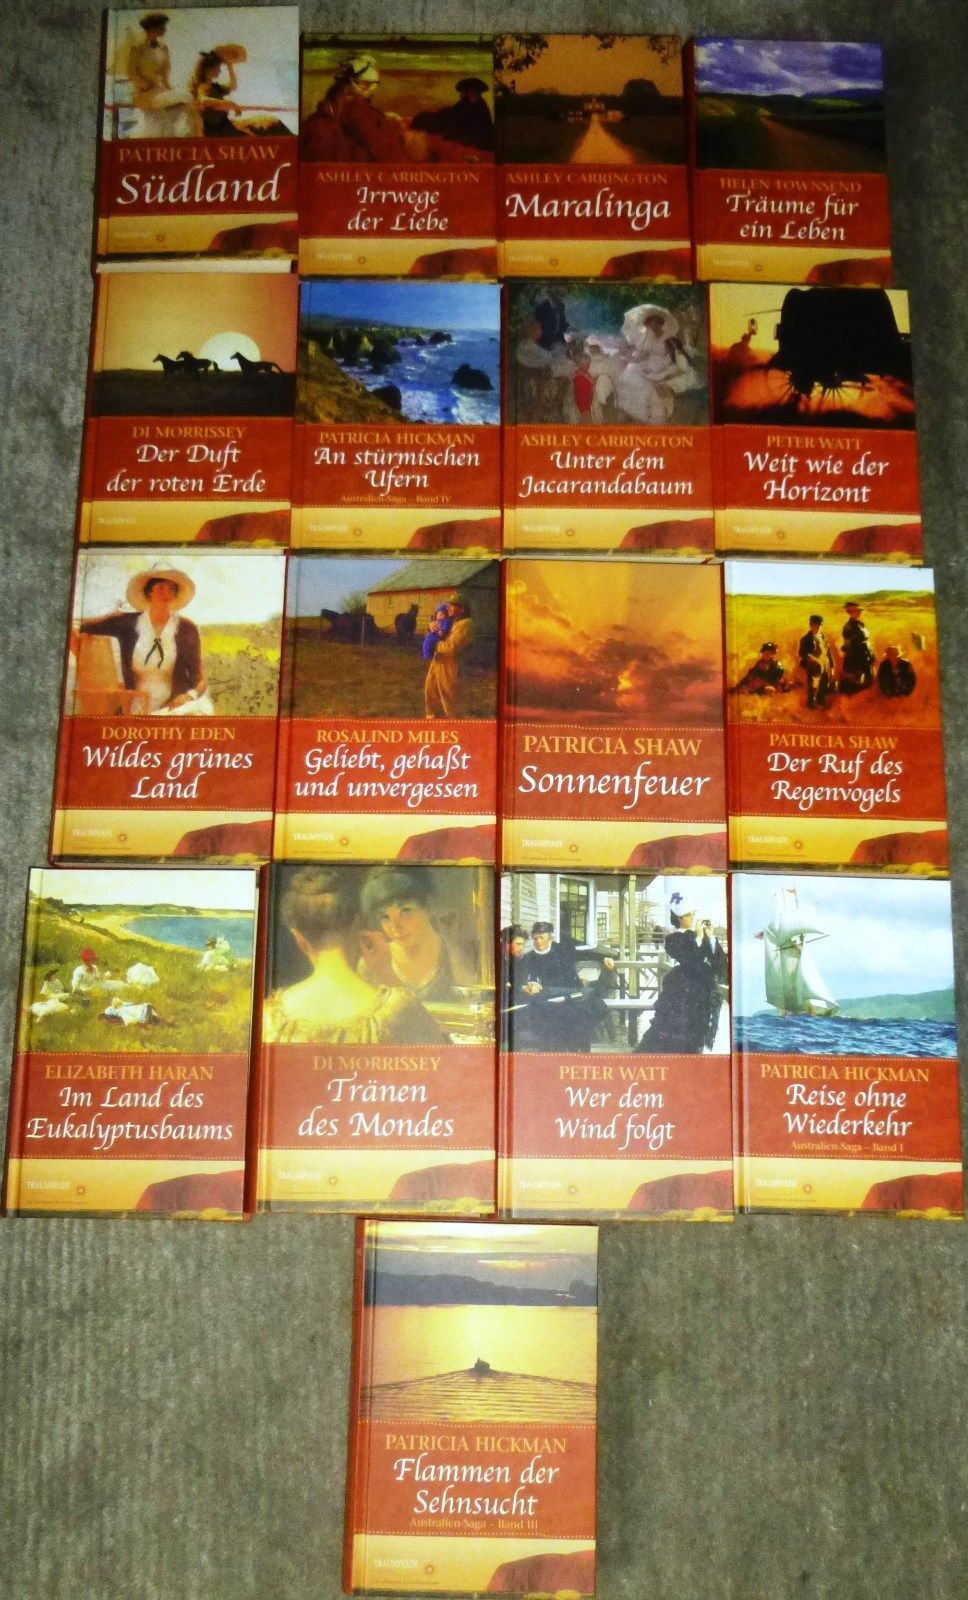 Australien - Romane, Reihe „Traumpfade“, div. Autoren, 17 Bücher, Weltbild, HC